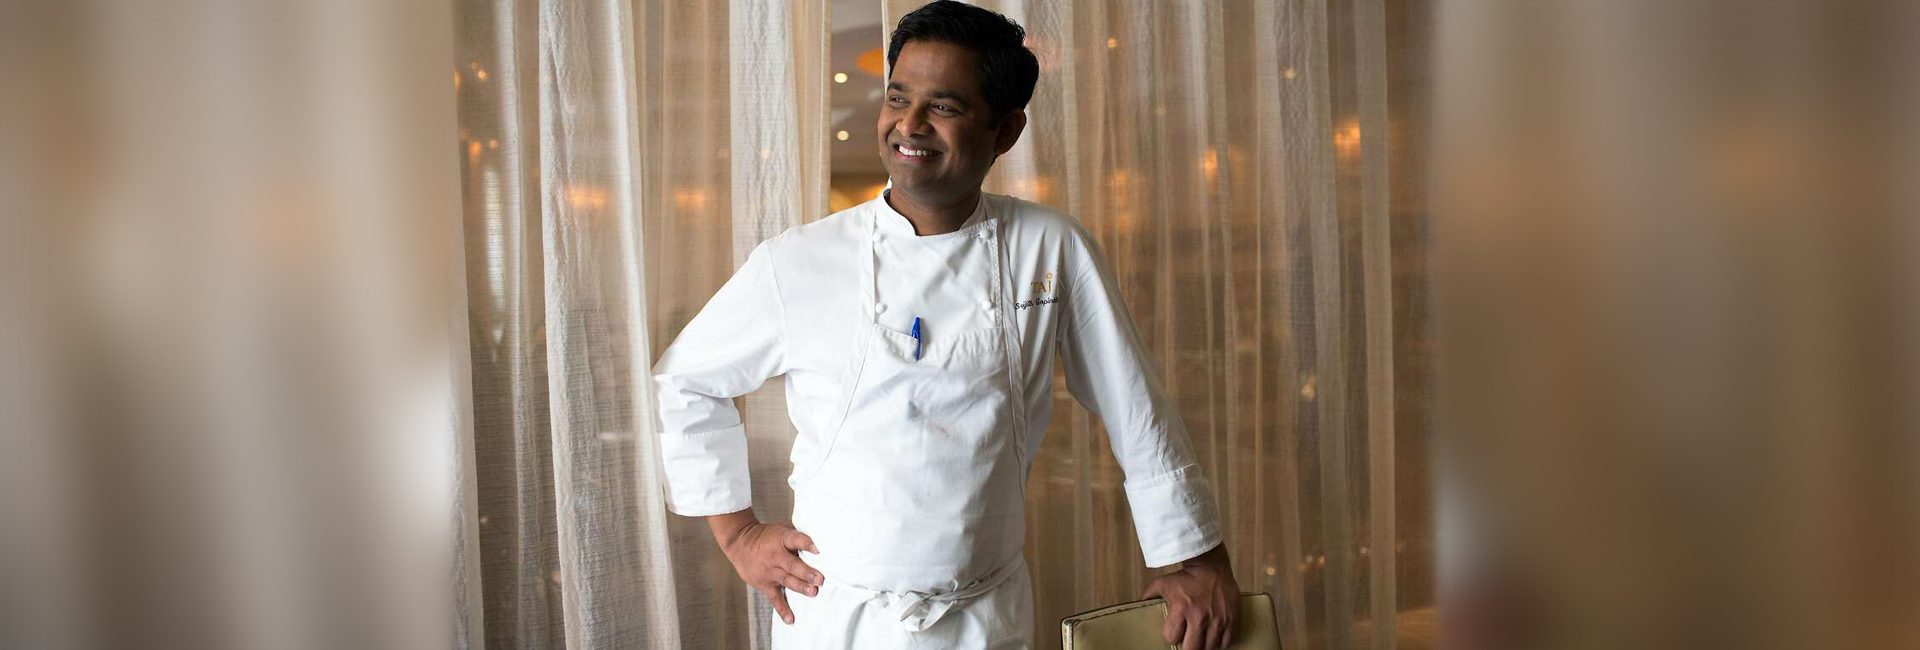 Der mit einem Michelin-Stern ausgezeichnete indische Koch Srijith Gopinath bringt die südindische Gewürzpalette in die Welt